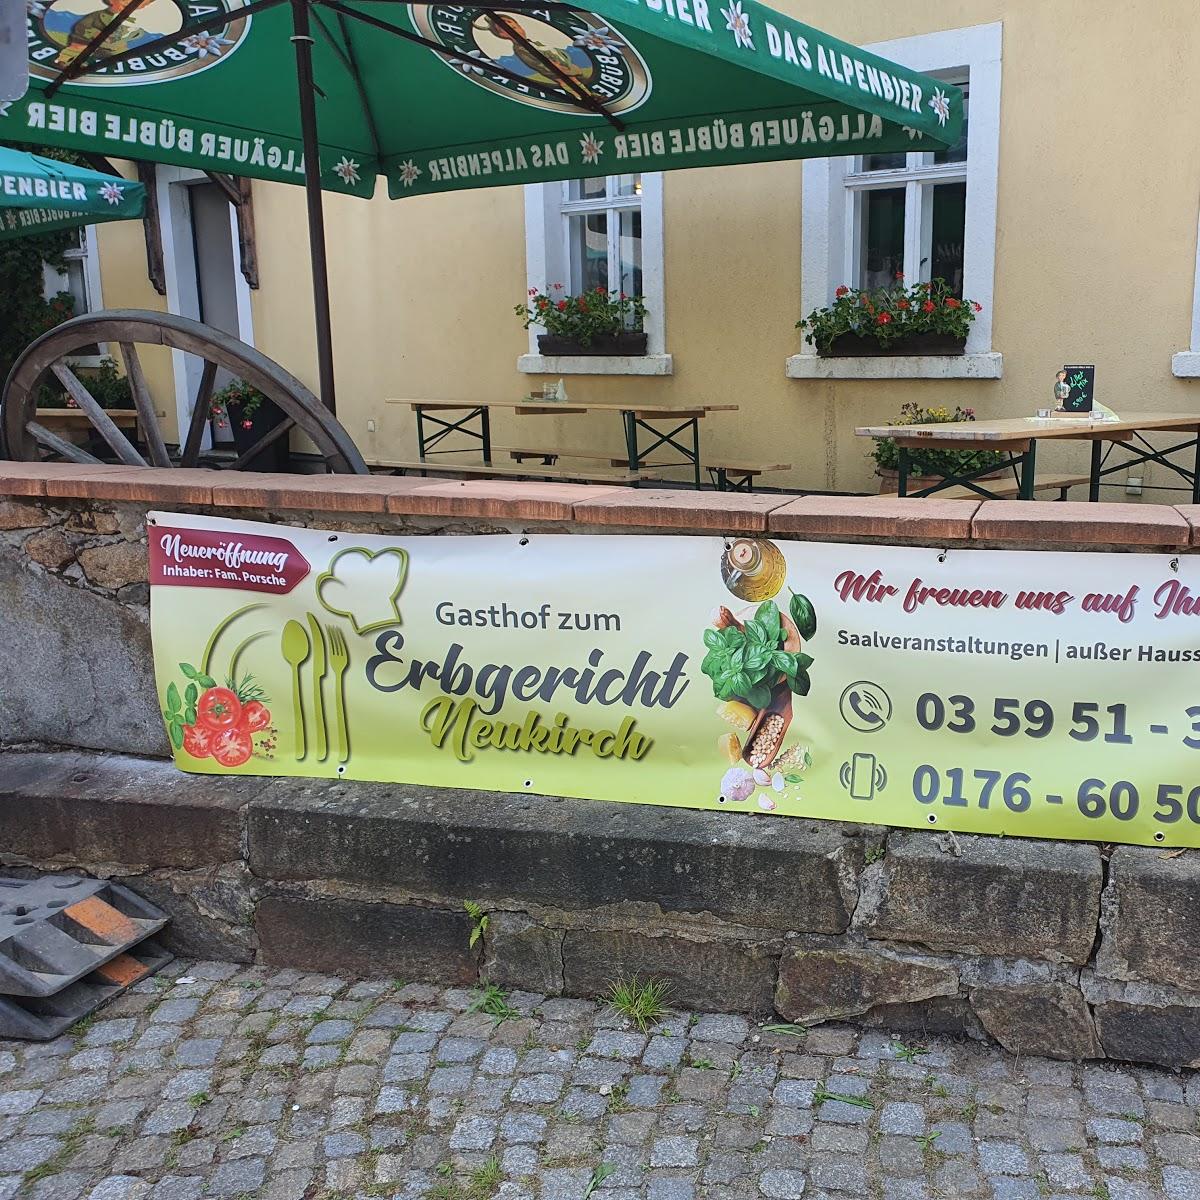 Restaurant "Hotel-Restaurant Zum Erbgericht" in Neukirch-Lausitz